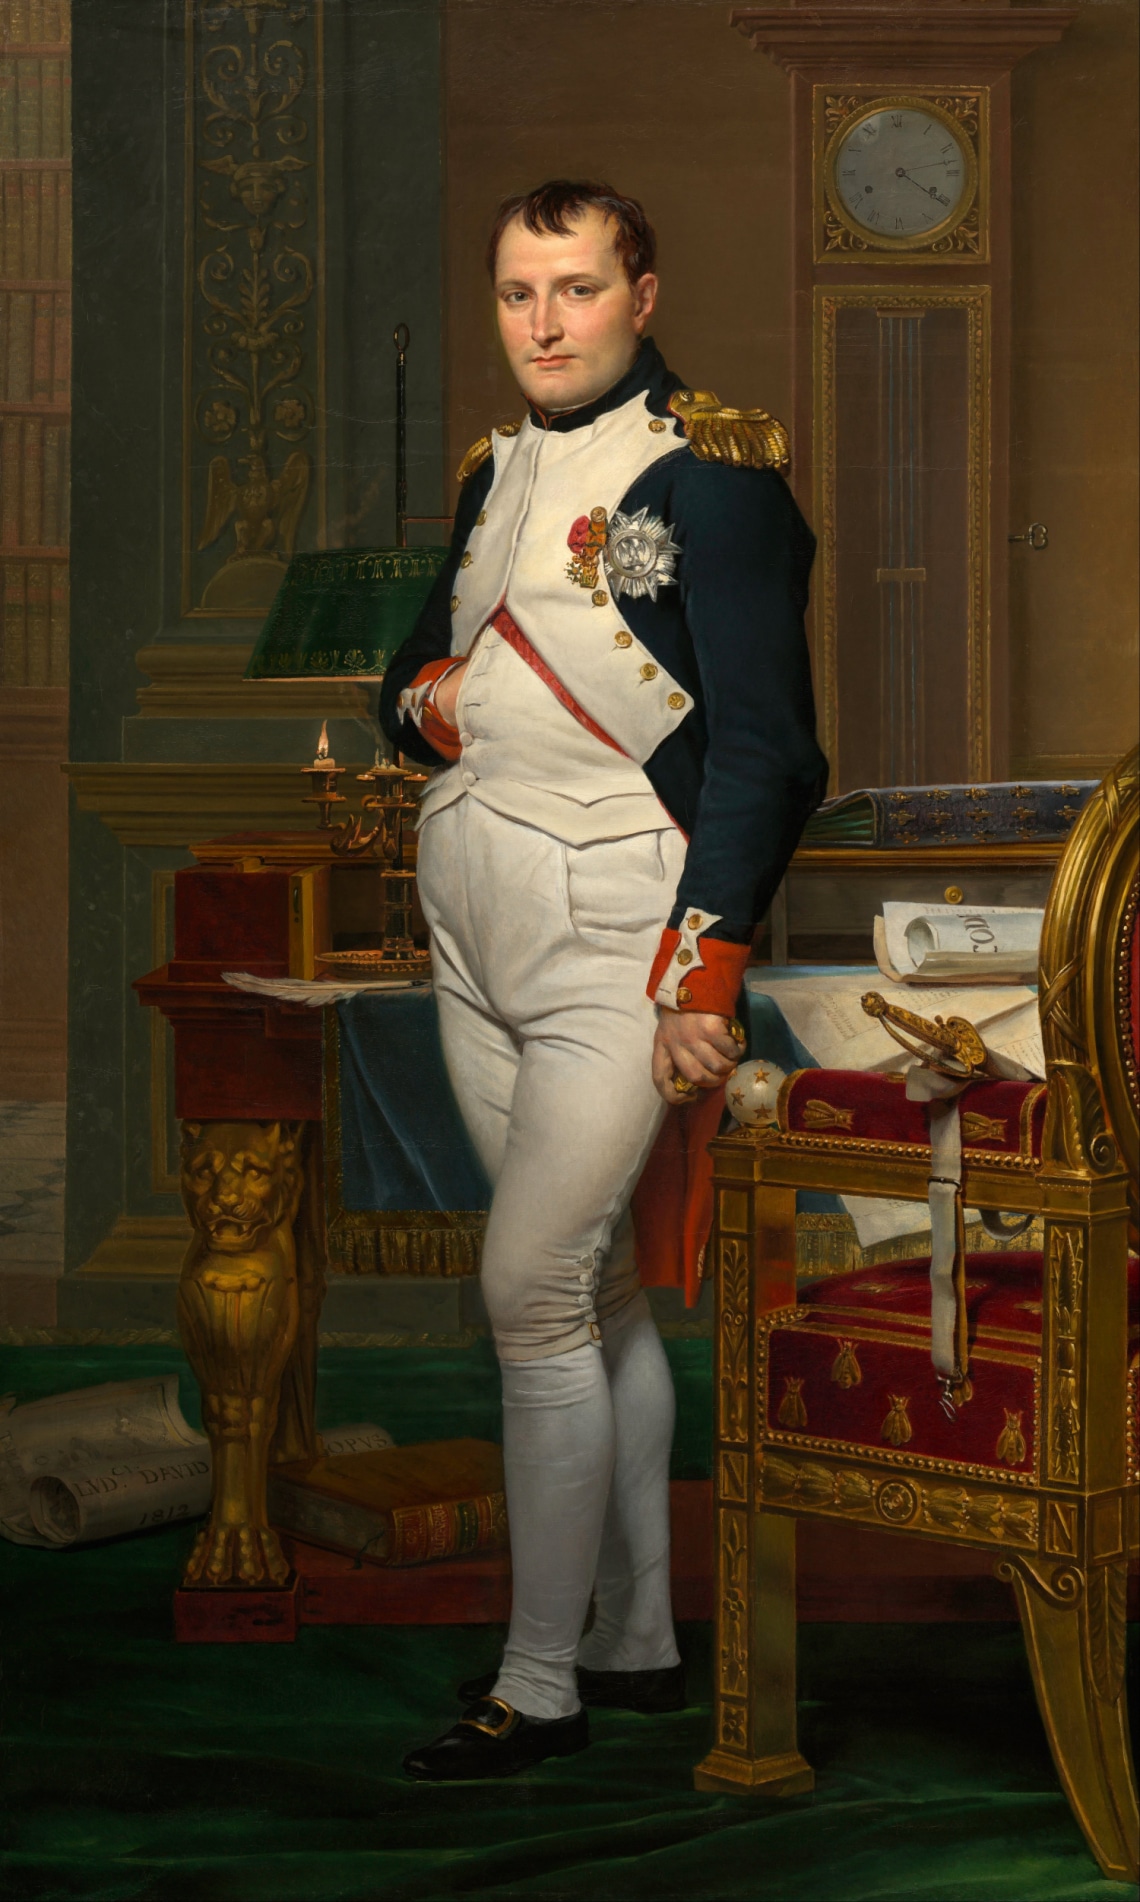 Napóleon alacsony volt